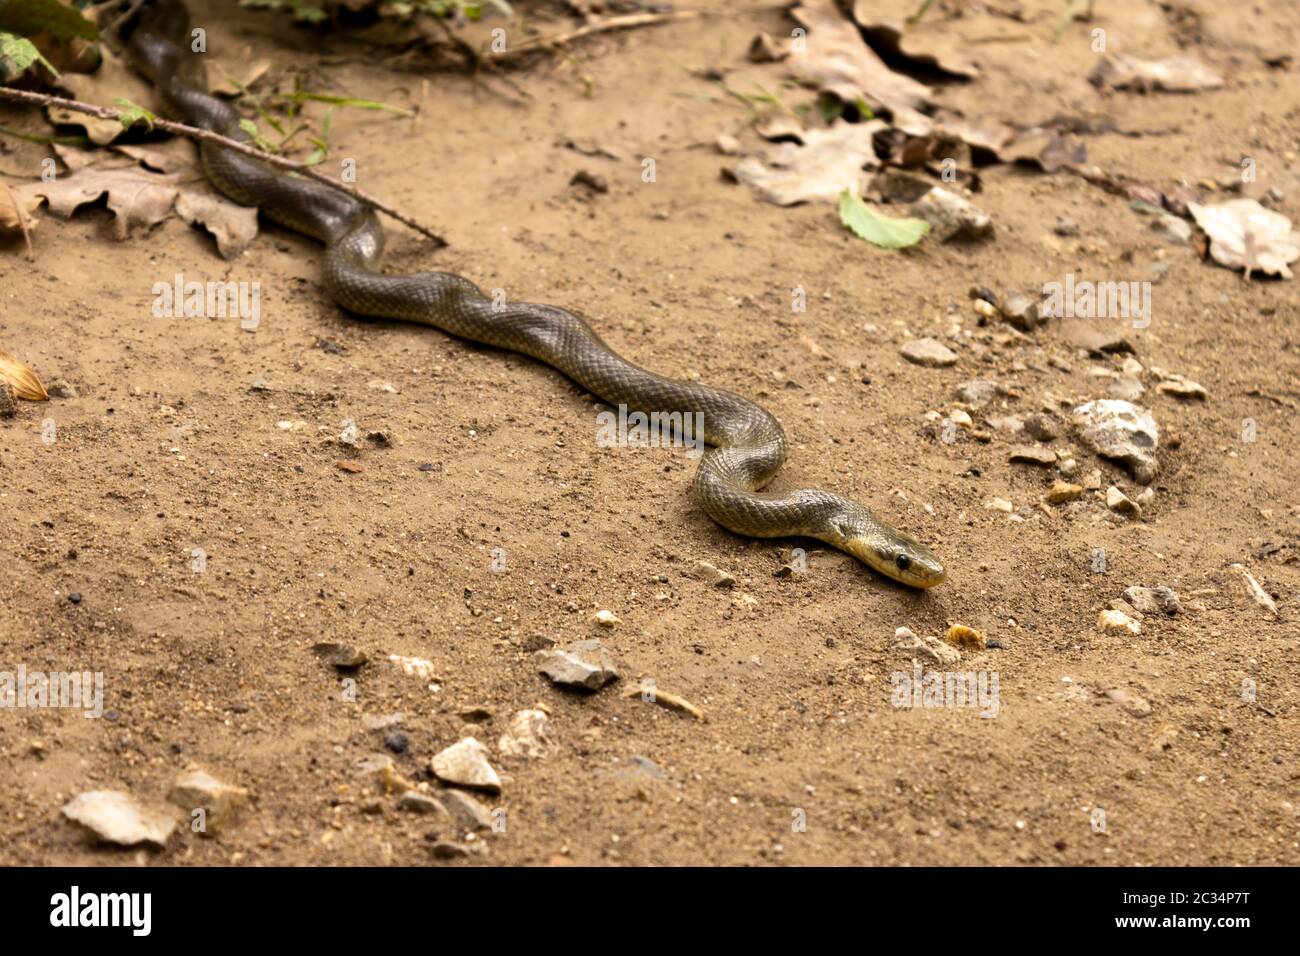 Natrix Maura sur le terrain. Serpent d'eau nicheur dans certaines régions (Camargue, du genre de serpents colubridae Natrix. Banque D'Images